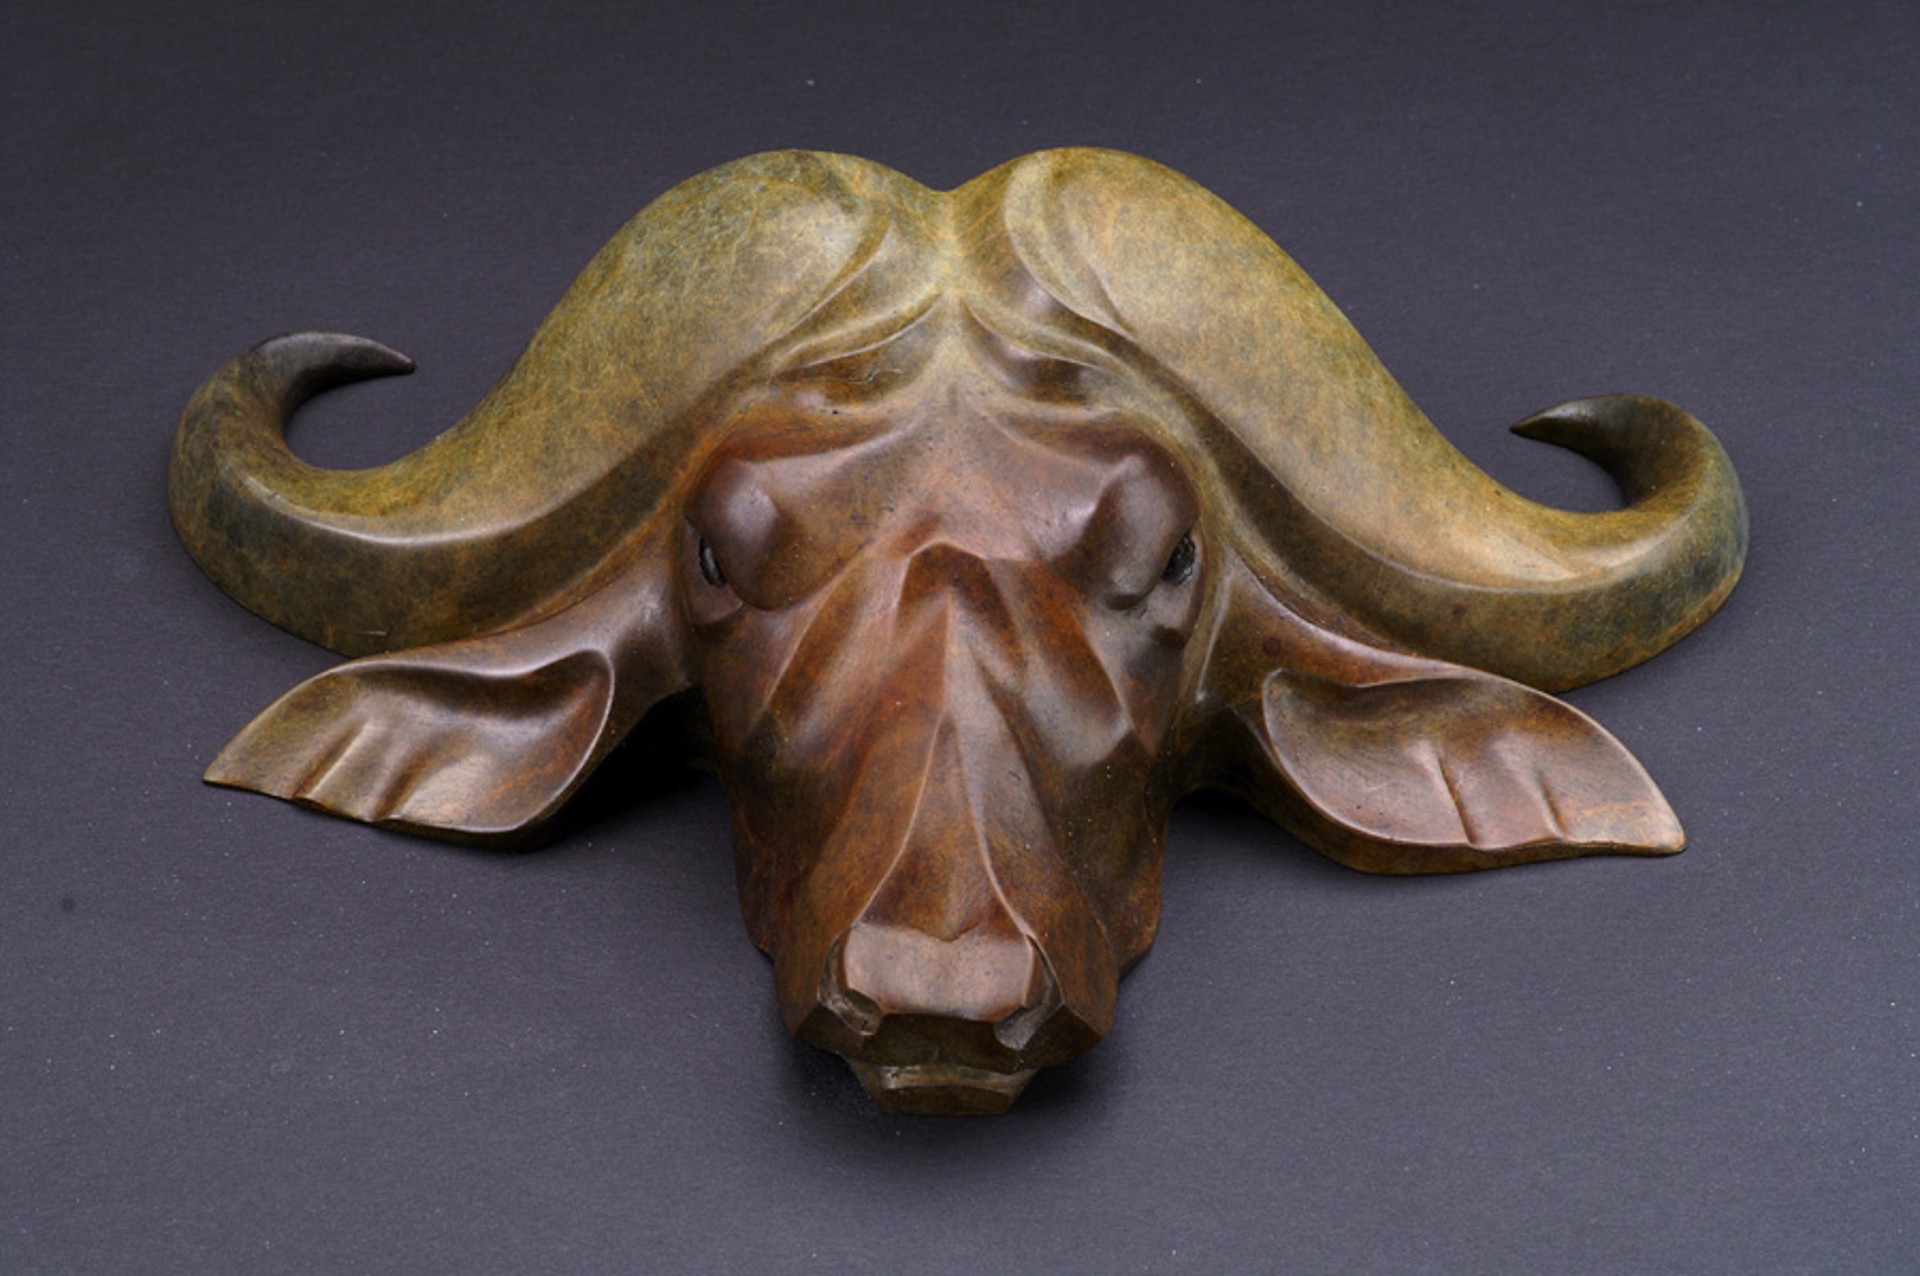 Cape Buffalo Mask Maquette by Rosetta